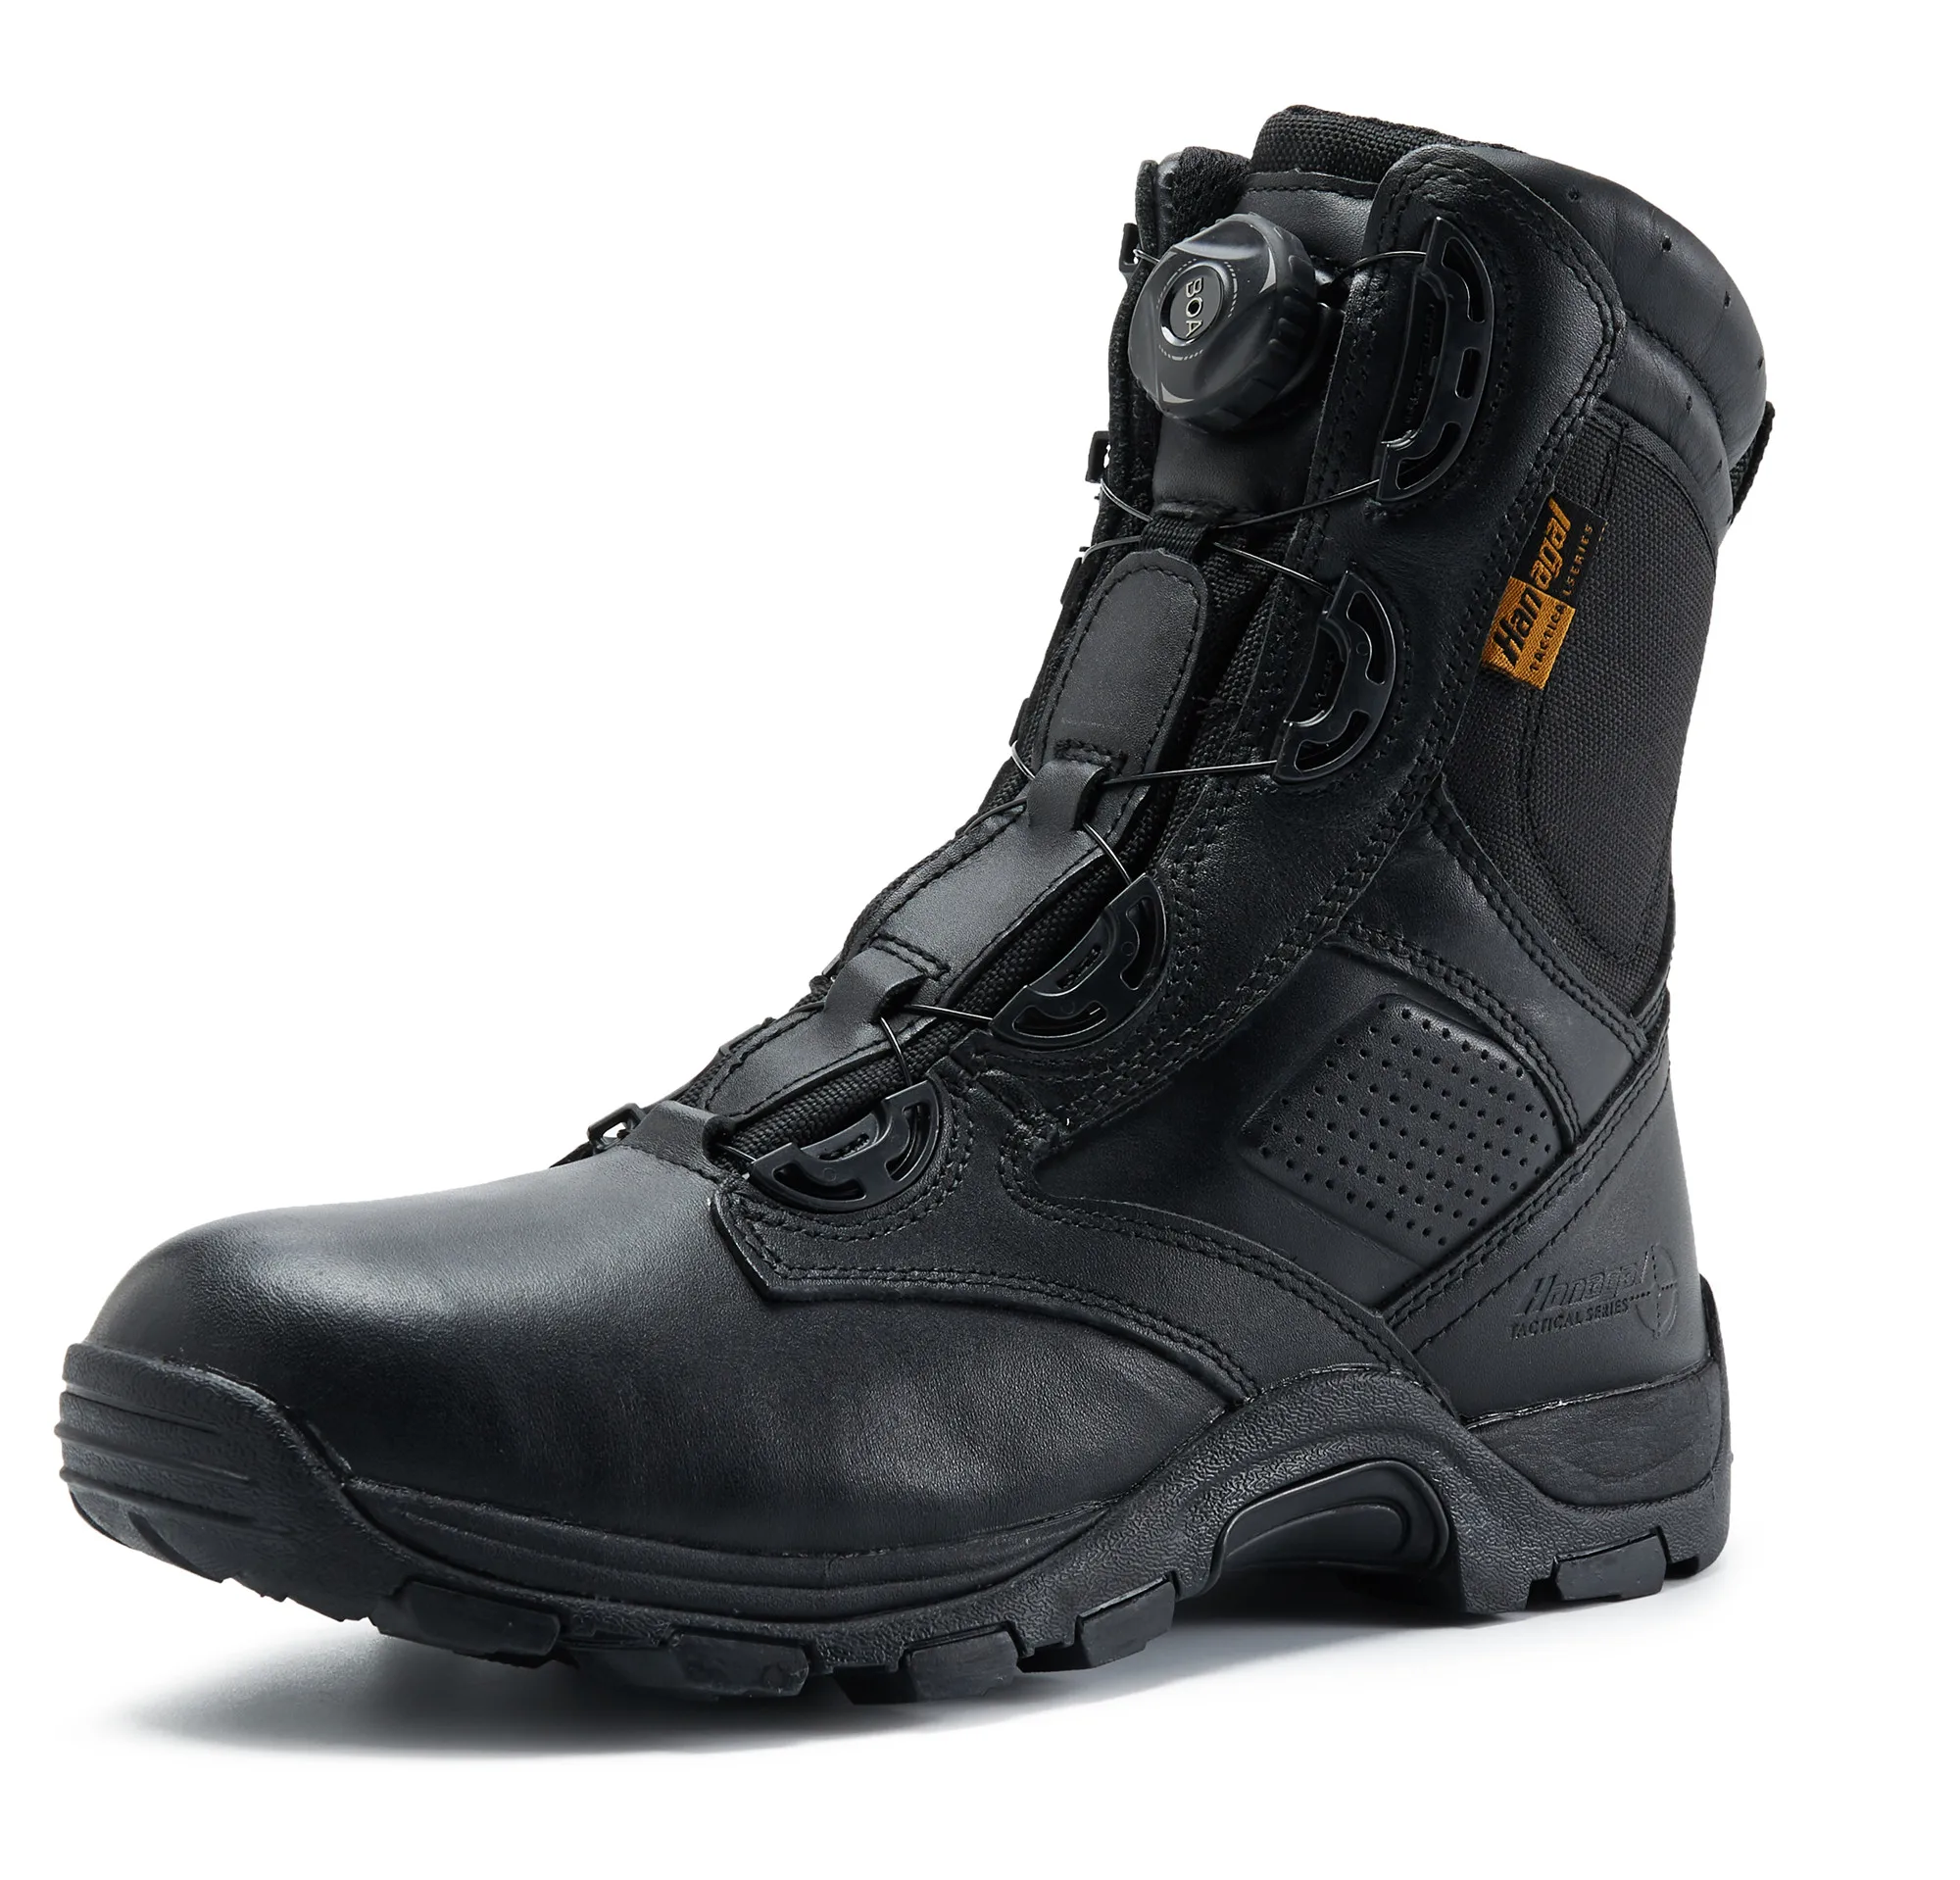 8 "黑色全粒面皮革军事军靴以及快速关闭系统和防水膜